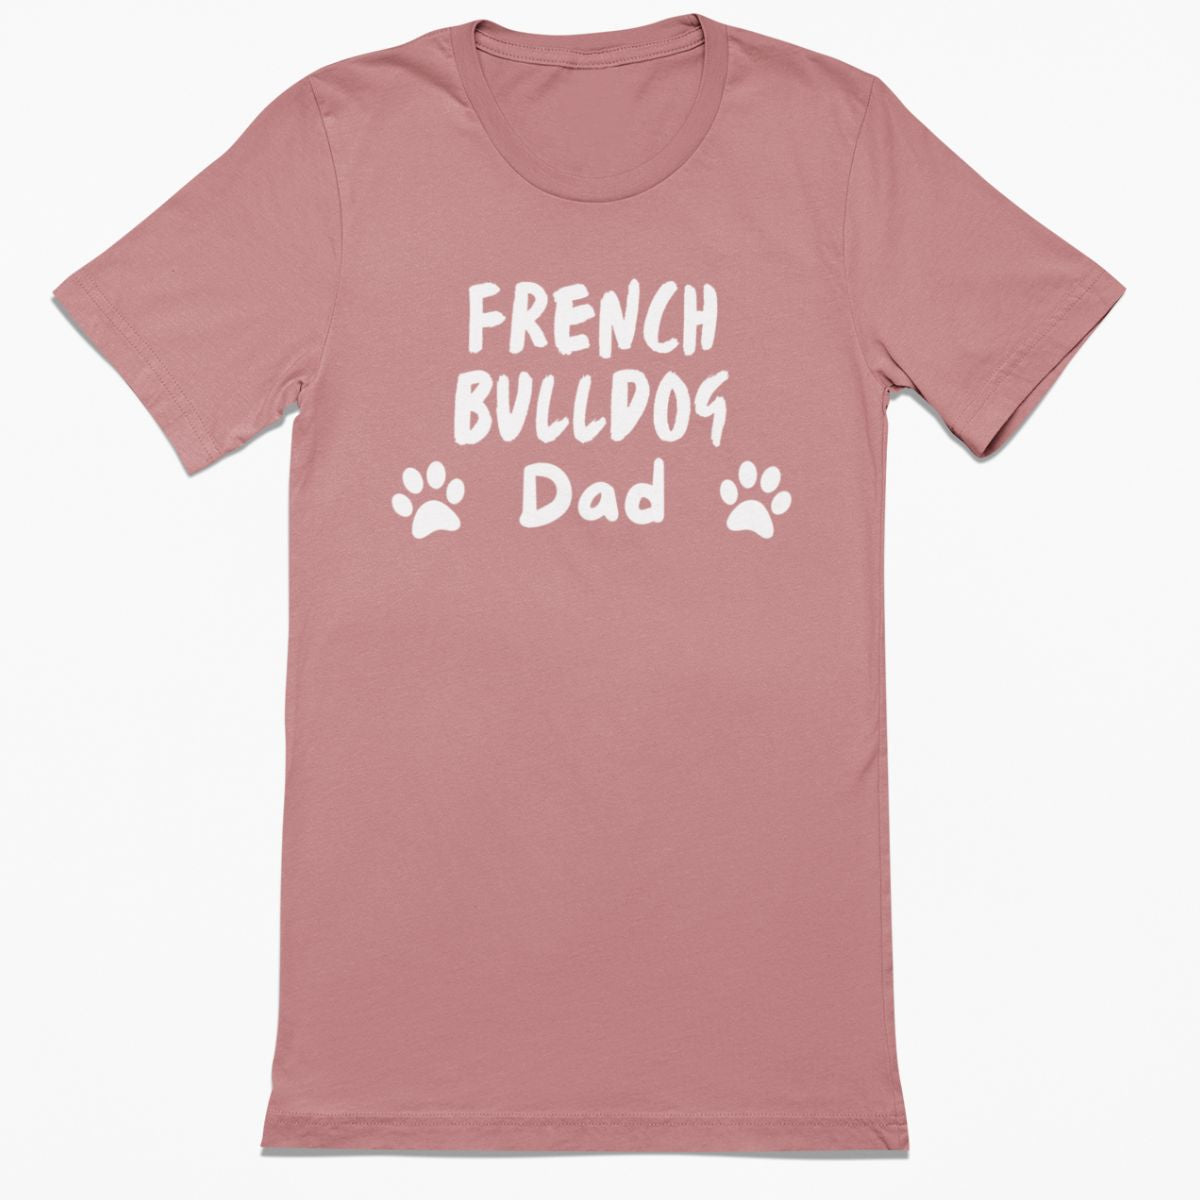 French Bulldog Dad Shirt